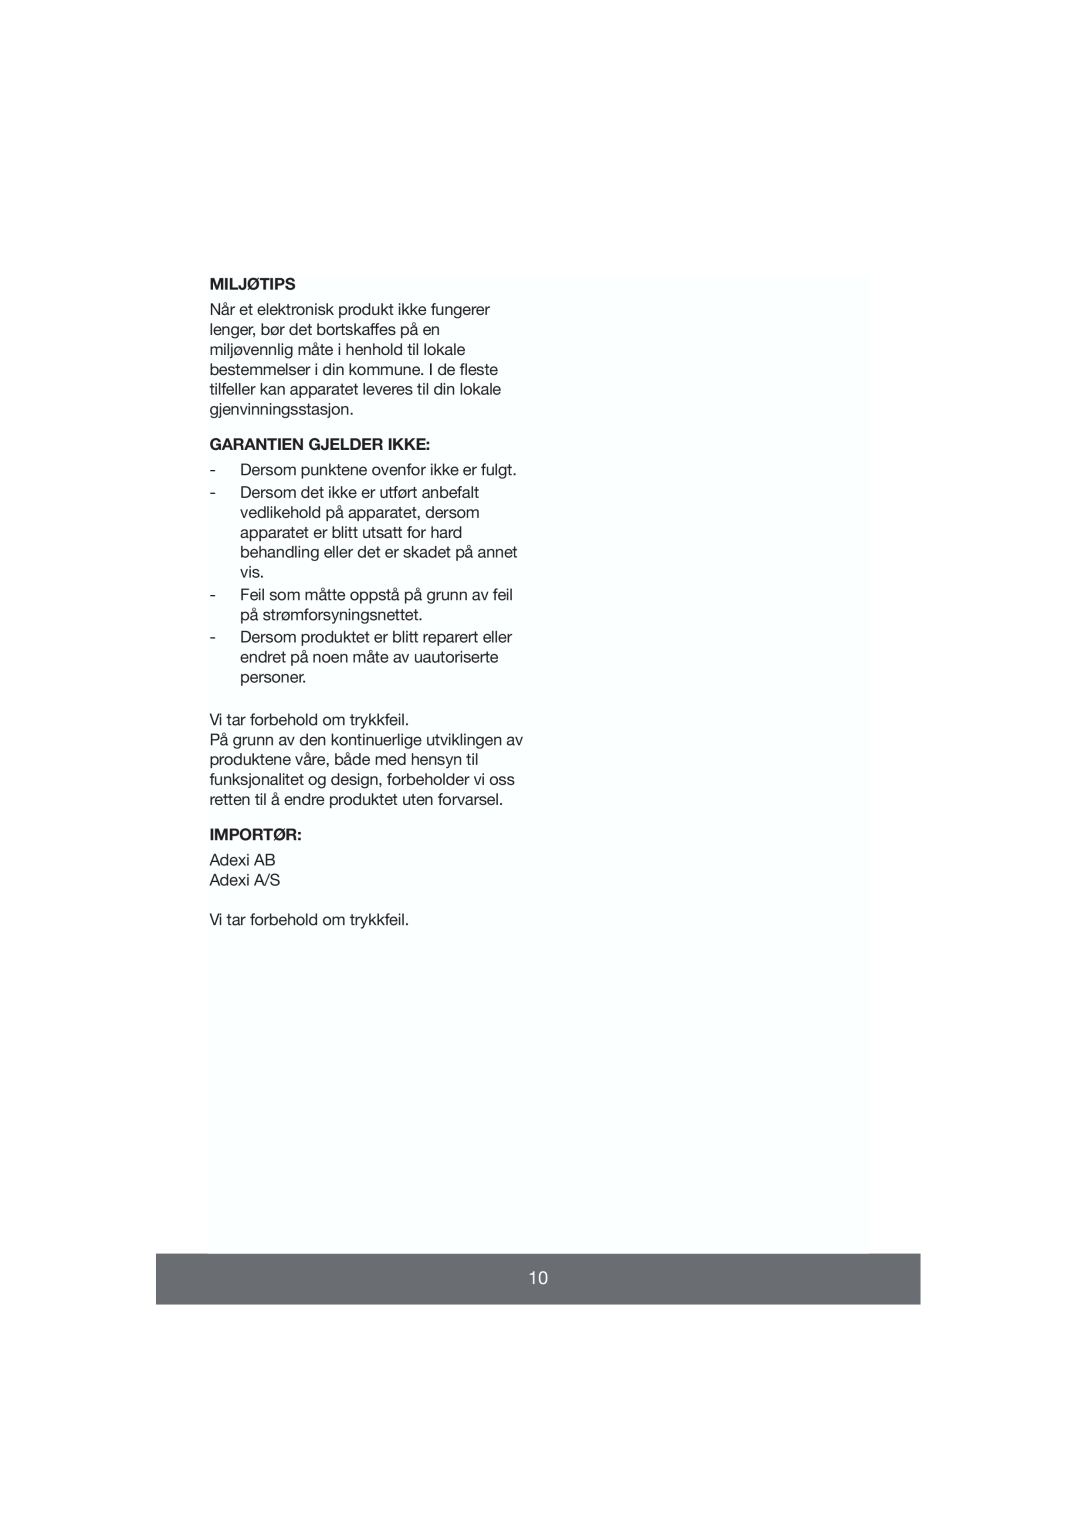 Butler 645-056 manual Garantien Gjelder Ikke, Miljøtips, Importør 